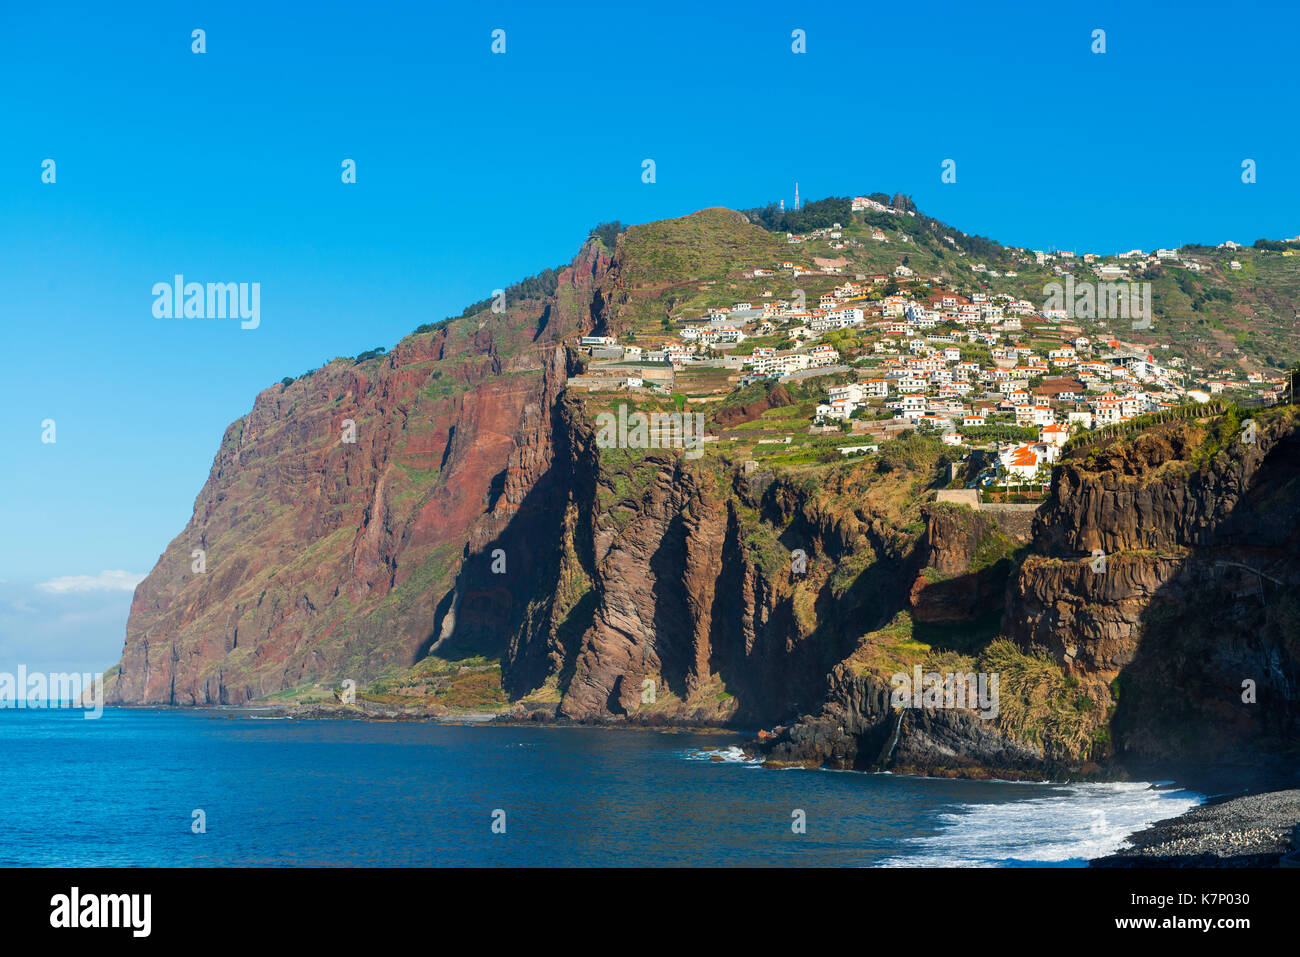 Costa de riscos en Cabo Girao, isla de Madeira, Portugal Foto de stock